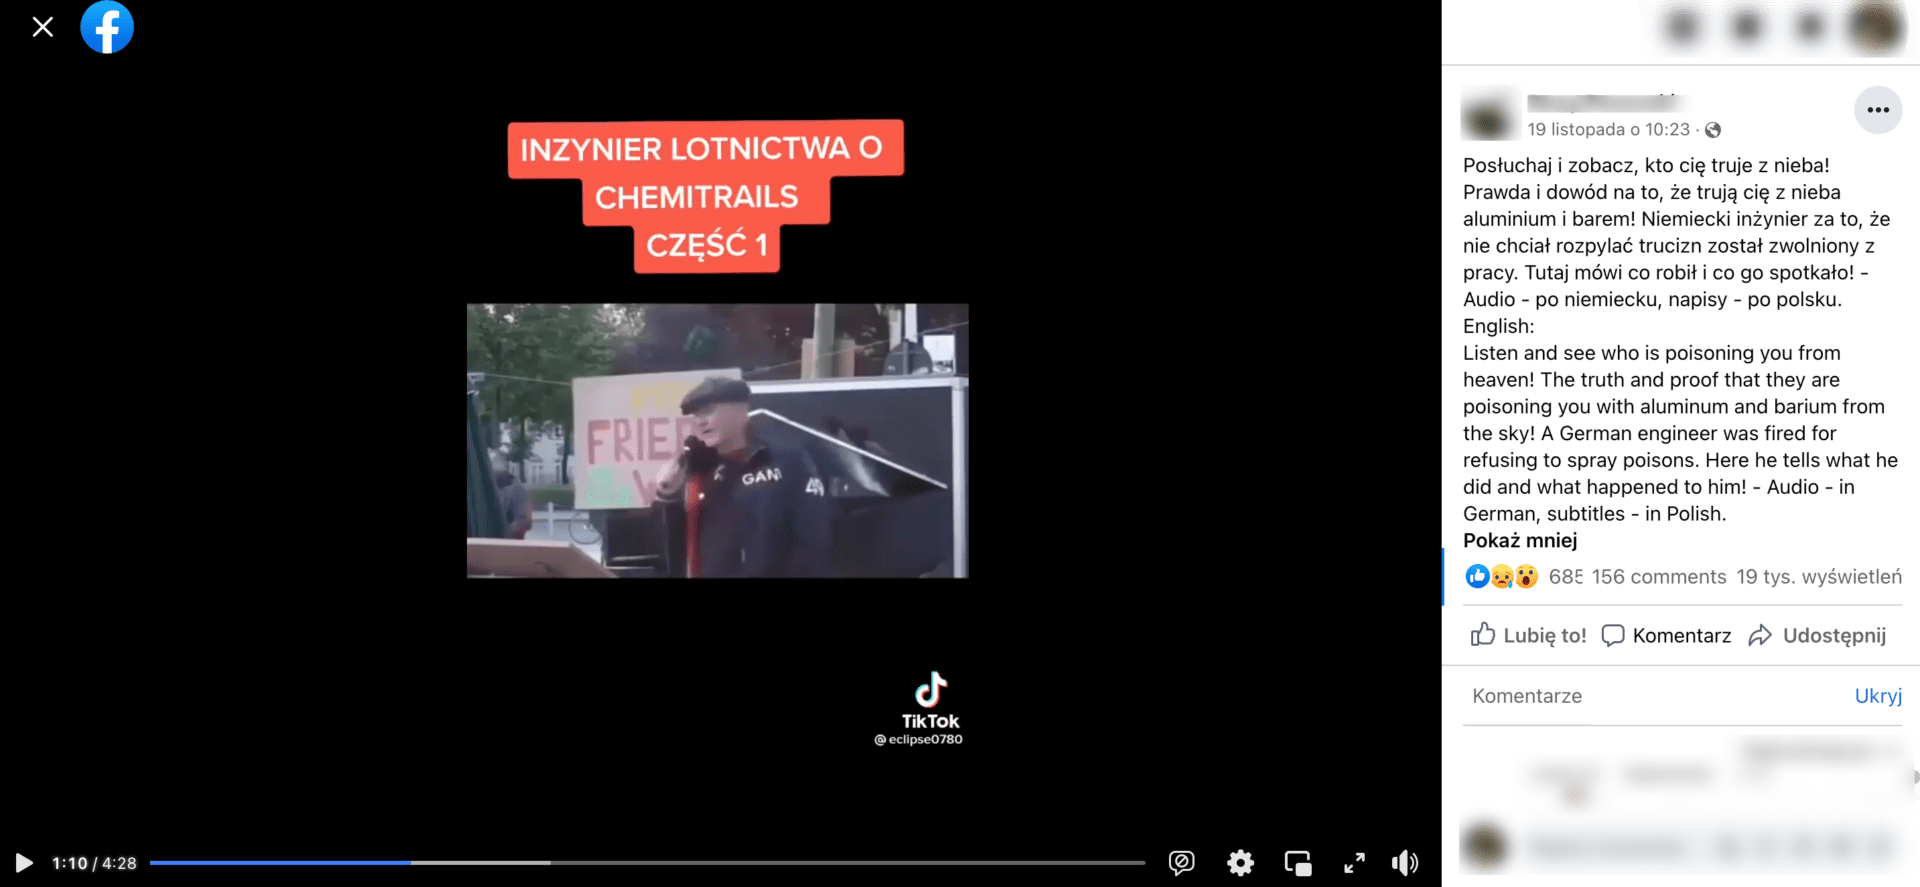 Zrzut ekranu posta, w którym udostępniono opisywane nagranie. Widoczny jest starszy mężczyzna w kurtce przeciwdeszczowej i kaszkiecie, trzymający mikrofon.